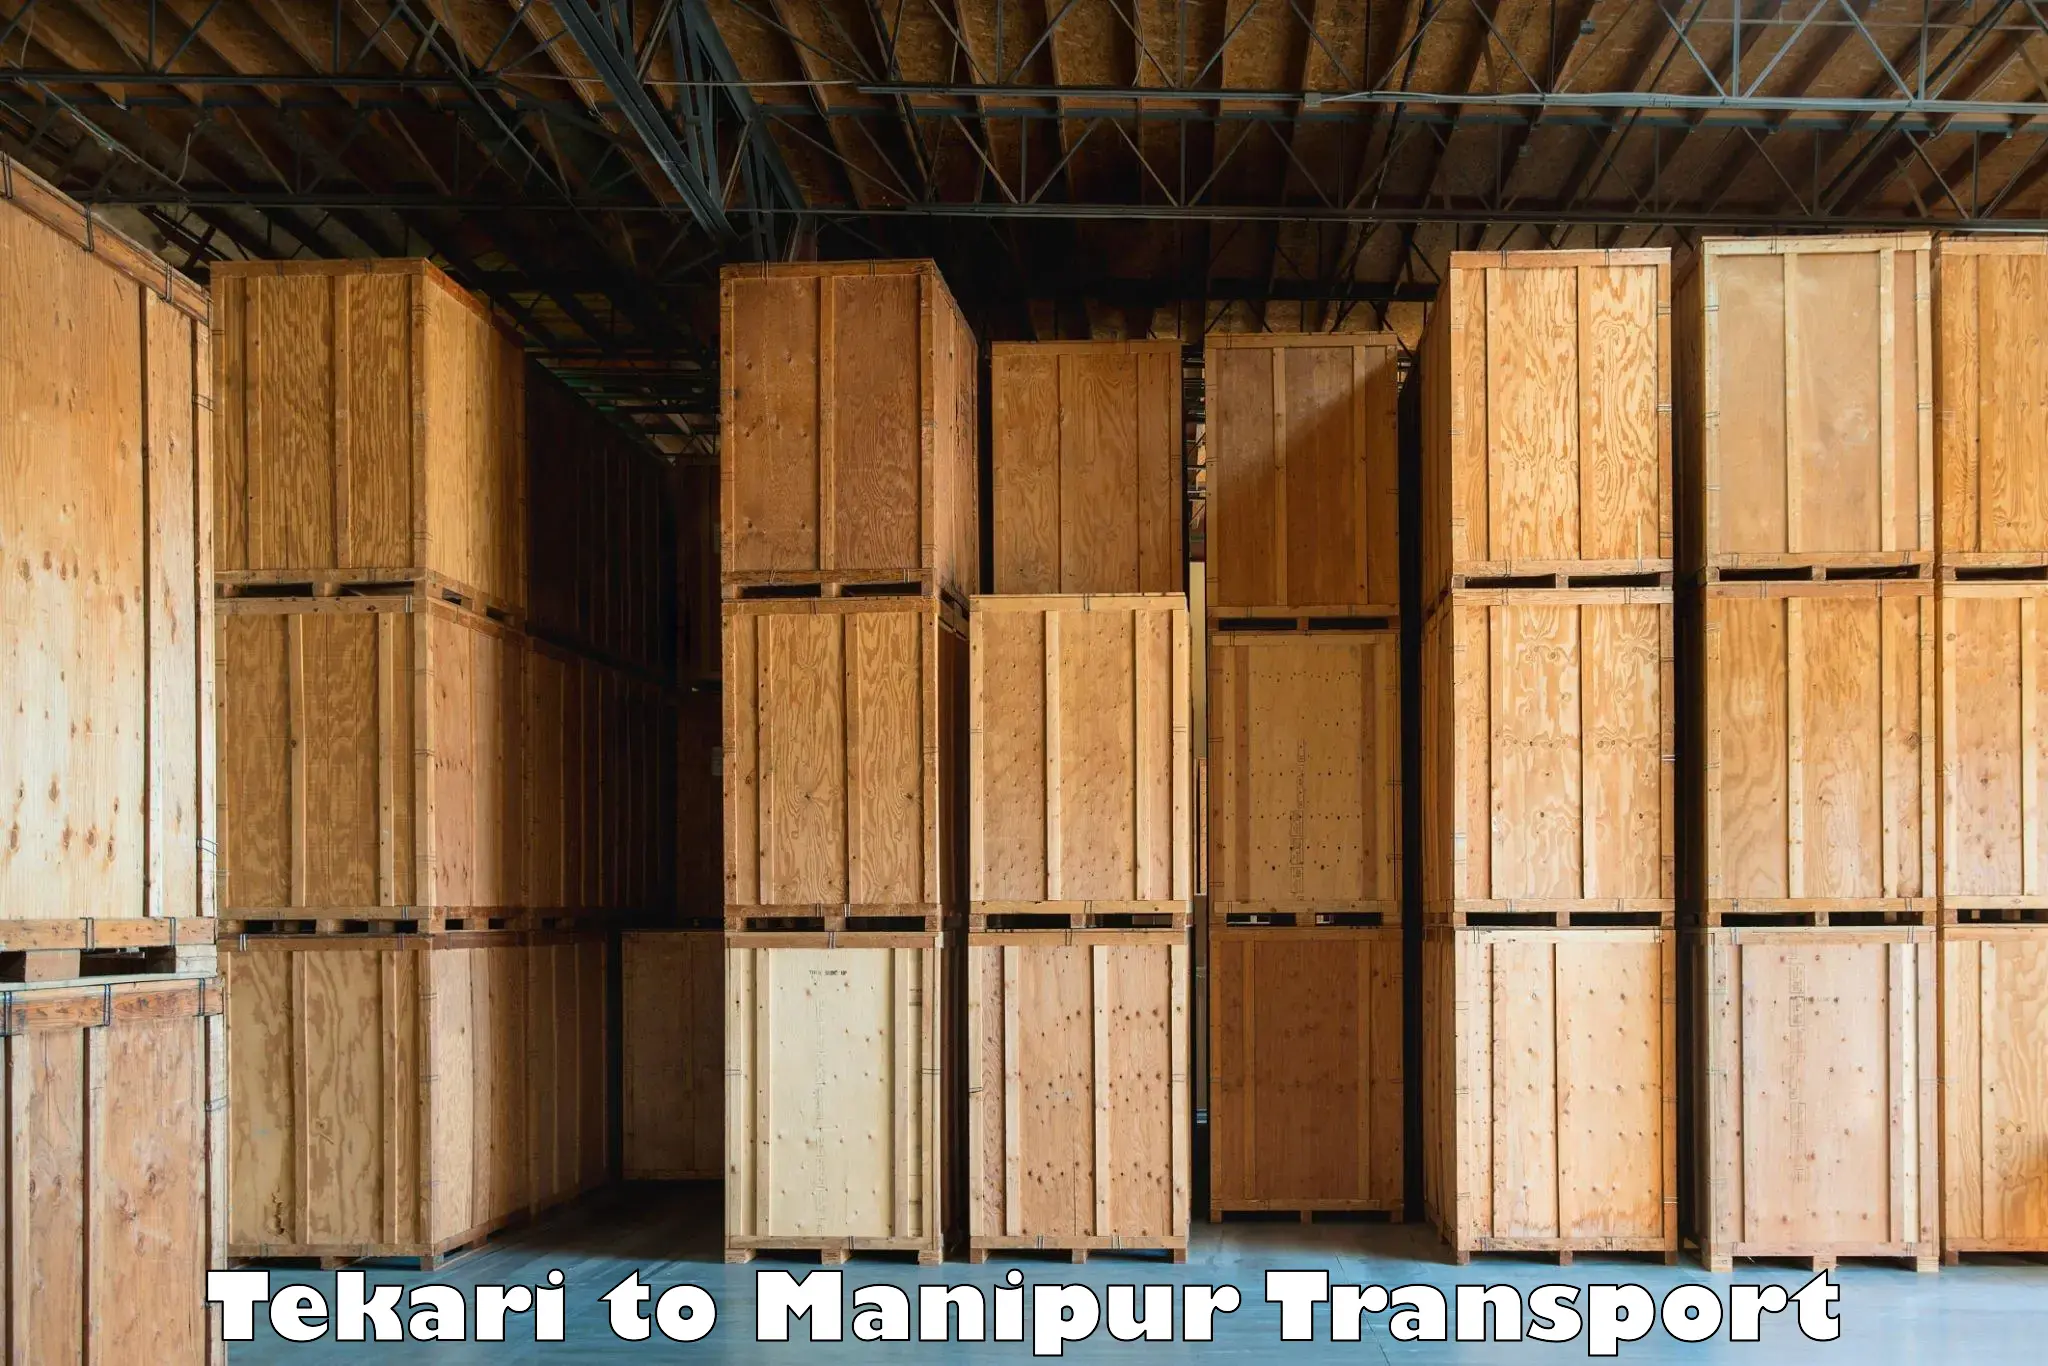 Furniture transport service Tekari to Manipur